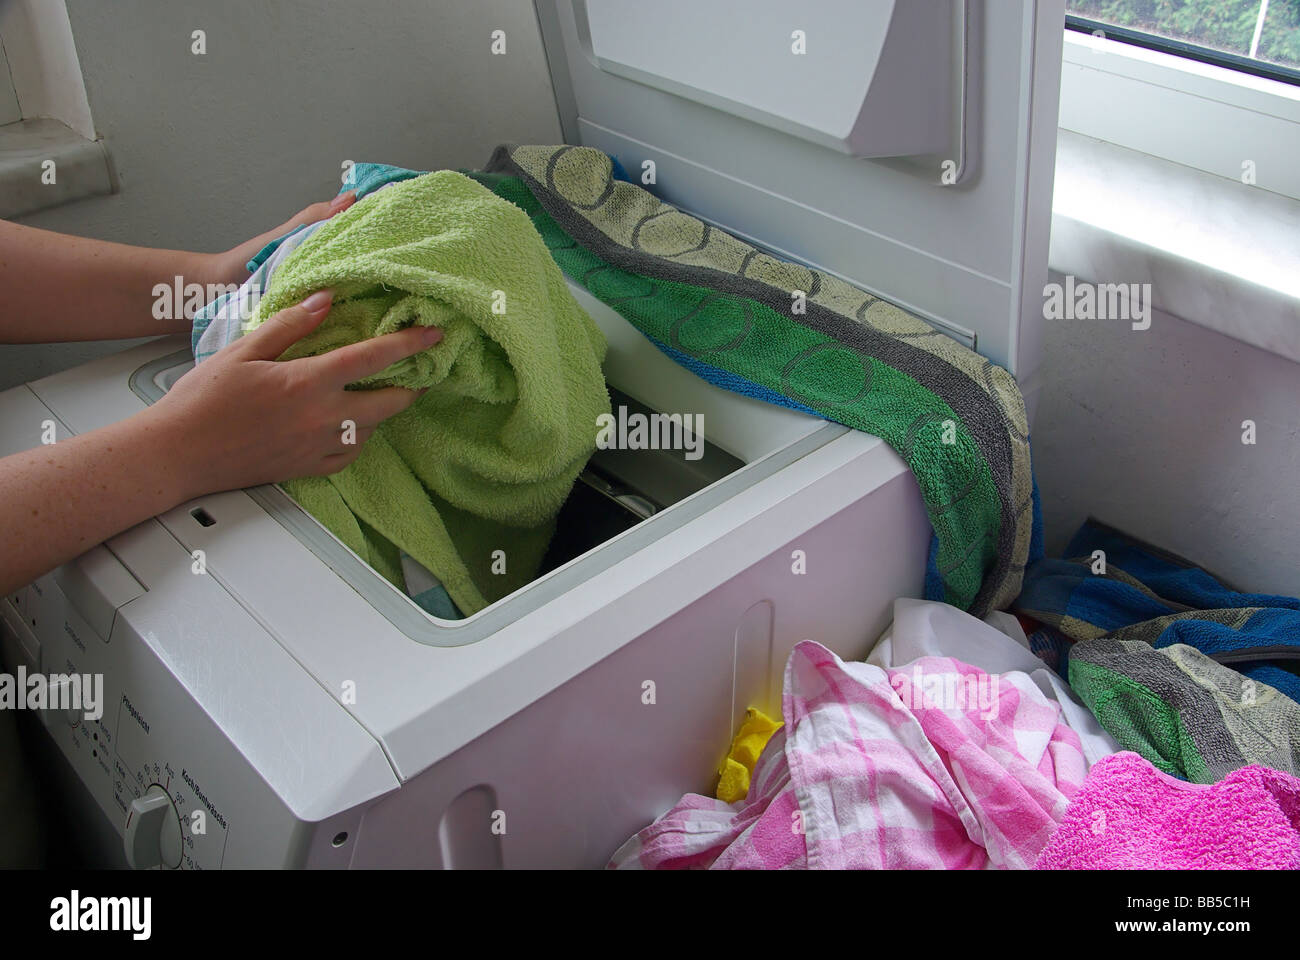 Wäsche waschen washing clothes 01 Stock Photo